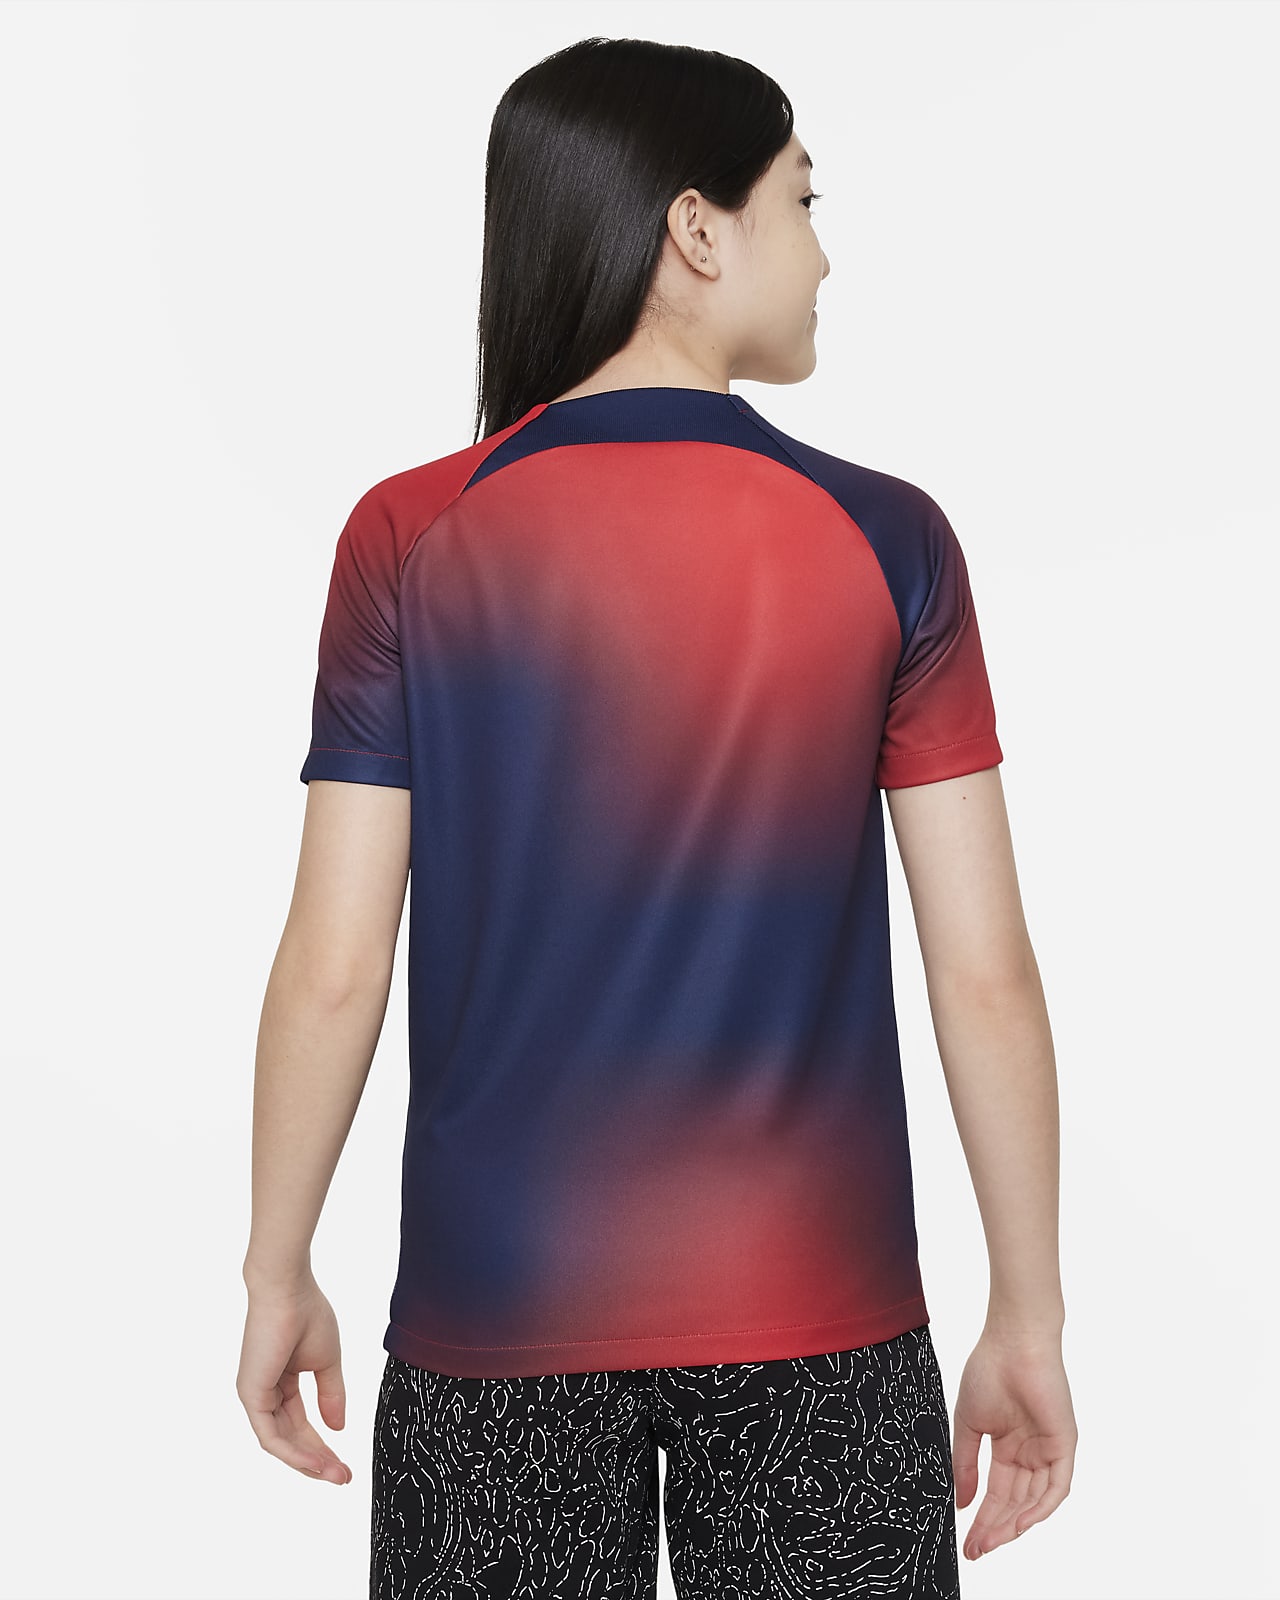 Camiseta Local Fútbol Niño Nike Paris Saint-Germain Azul/Blanco/Rojo